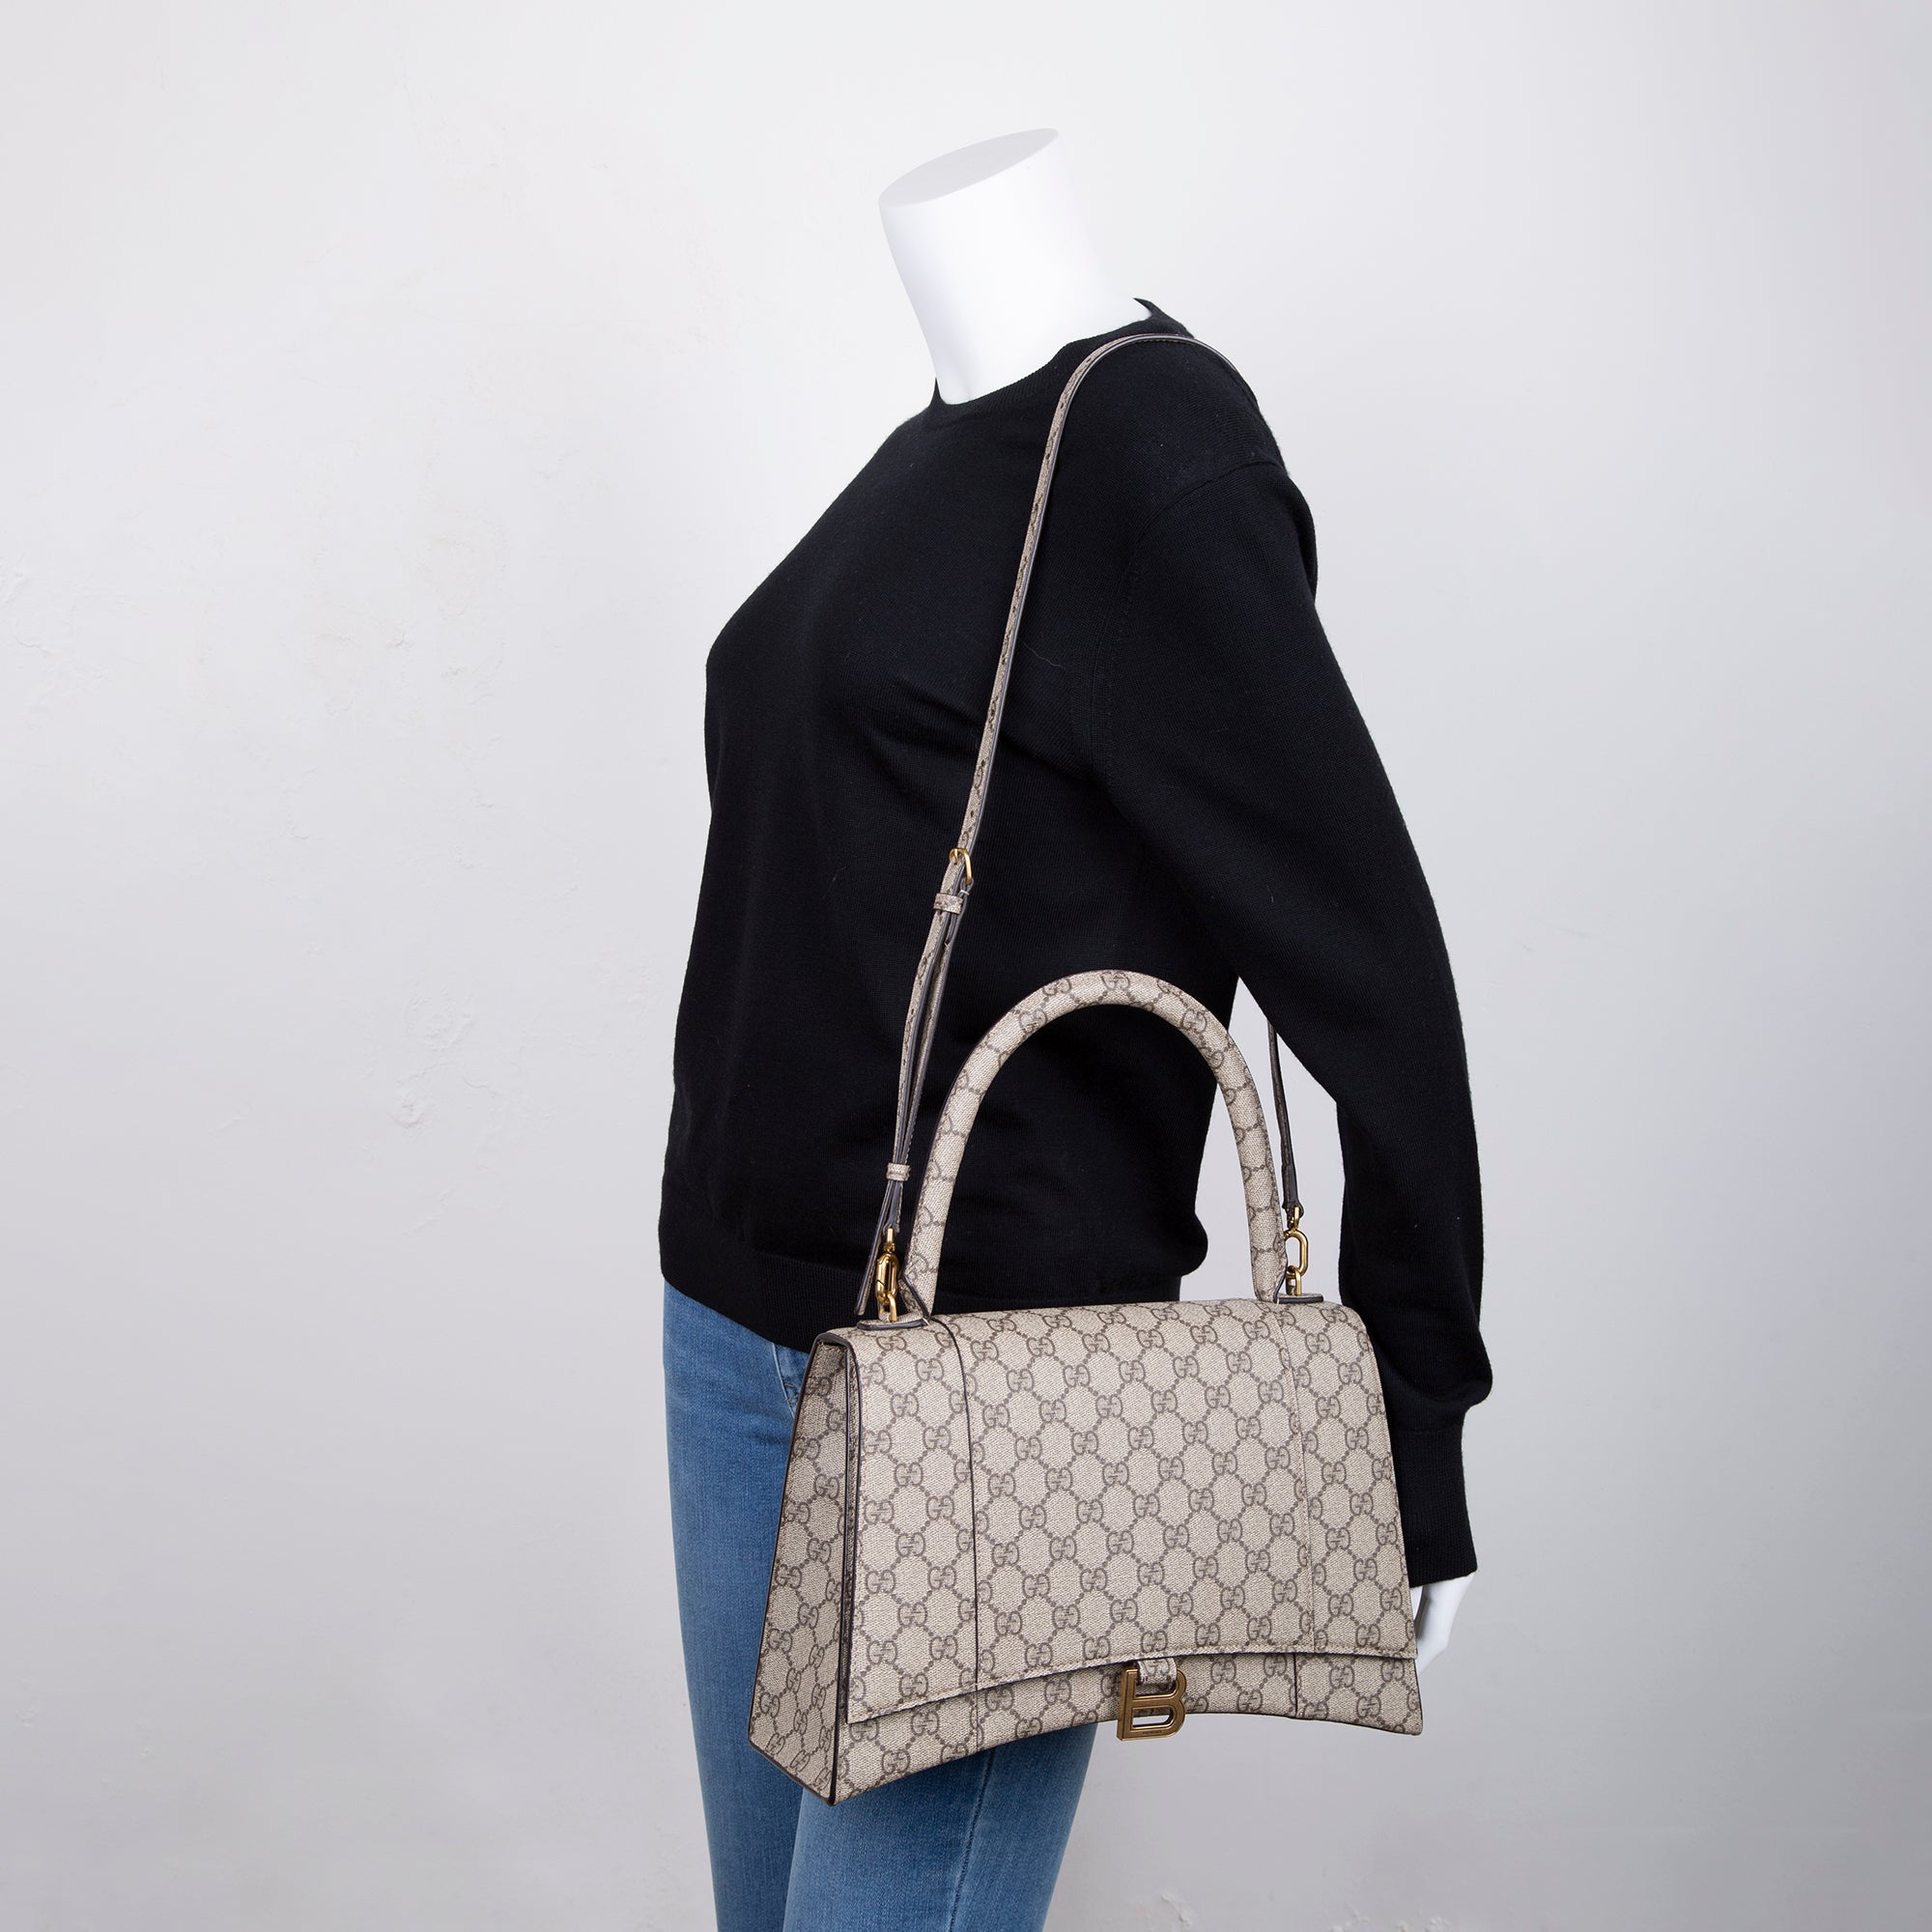 Gucci x Balenciaga The Hacker Project Hourglass Bag Medium (681696)